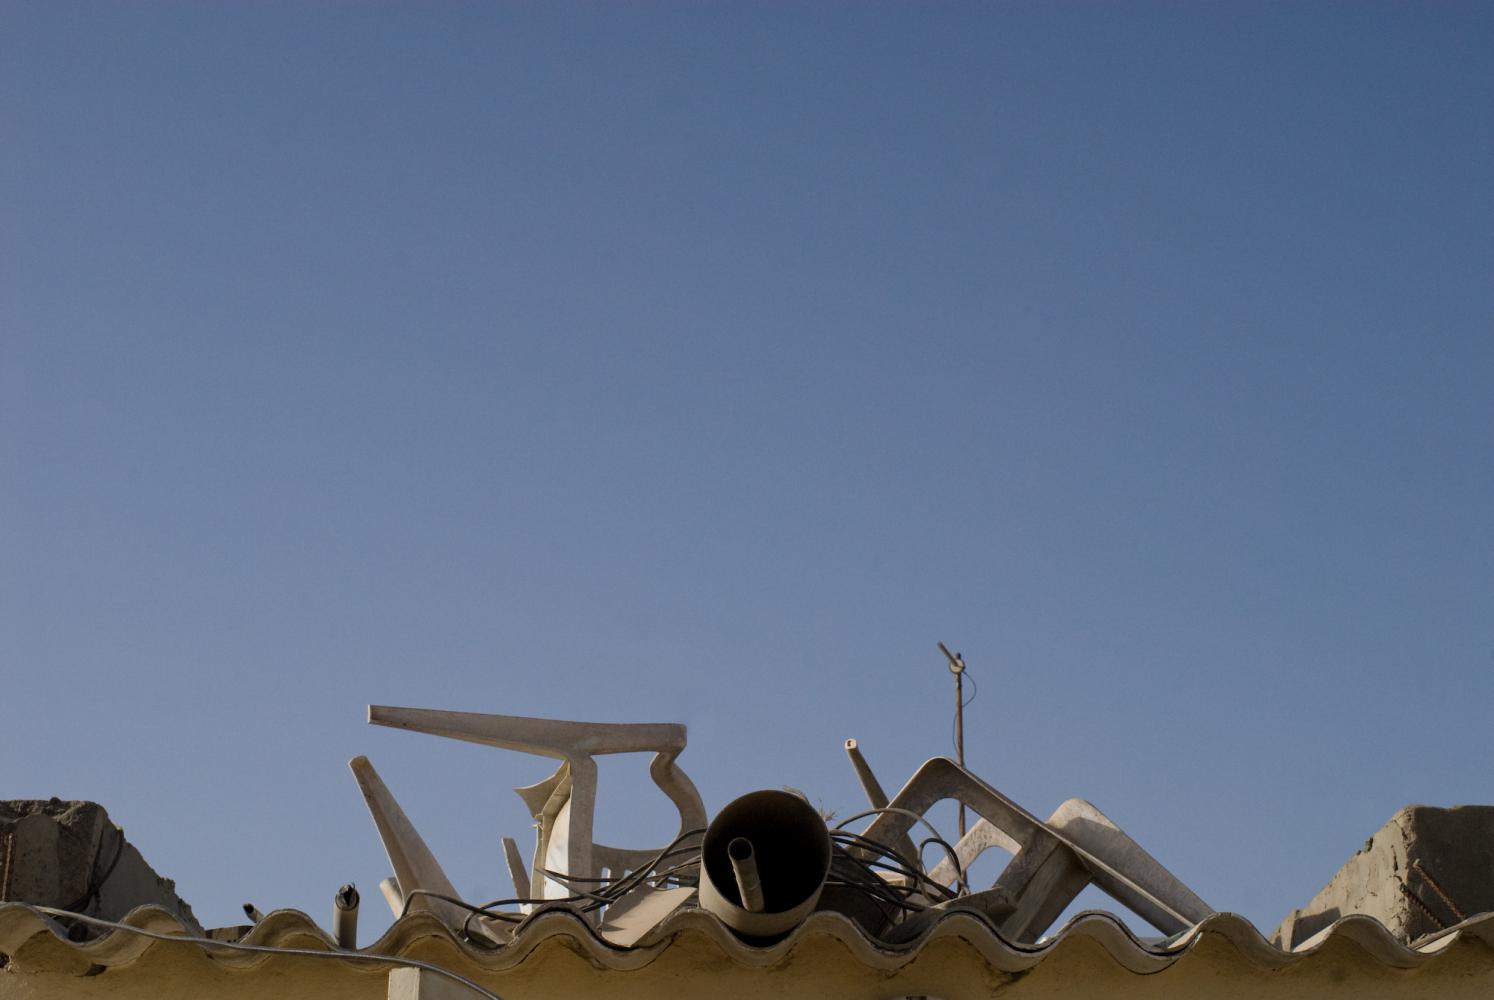 Des chaises en plastique blanc, un gros tuyau, un câble... sont empilés sur un toit de plastique ondulé, pris entre deux immeubles de parpaings. Dakar, Sénégal, mars 2010.